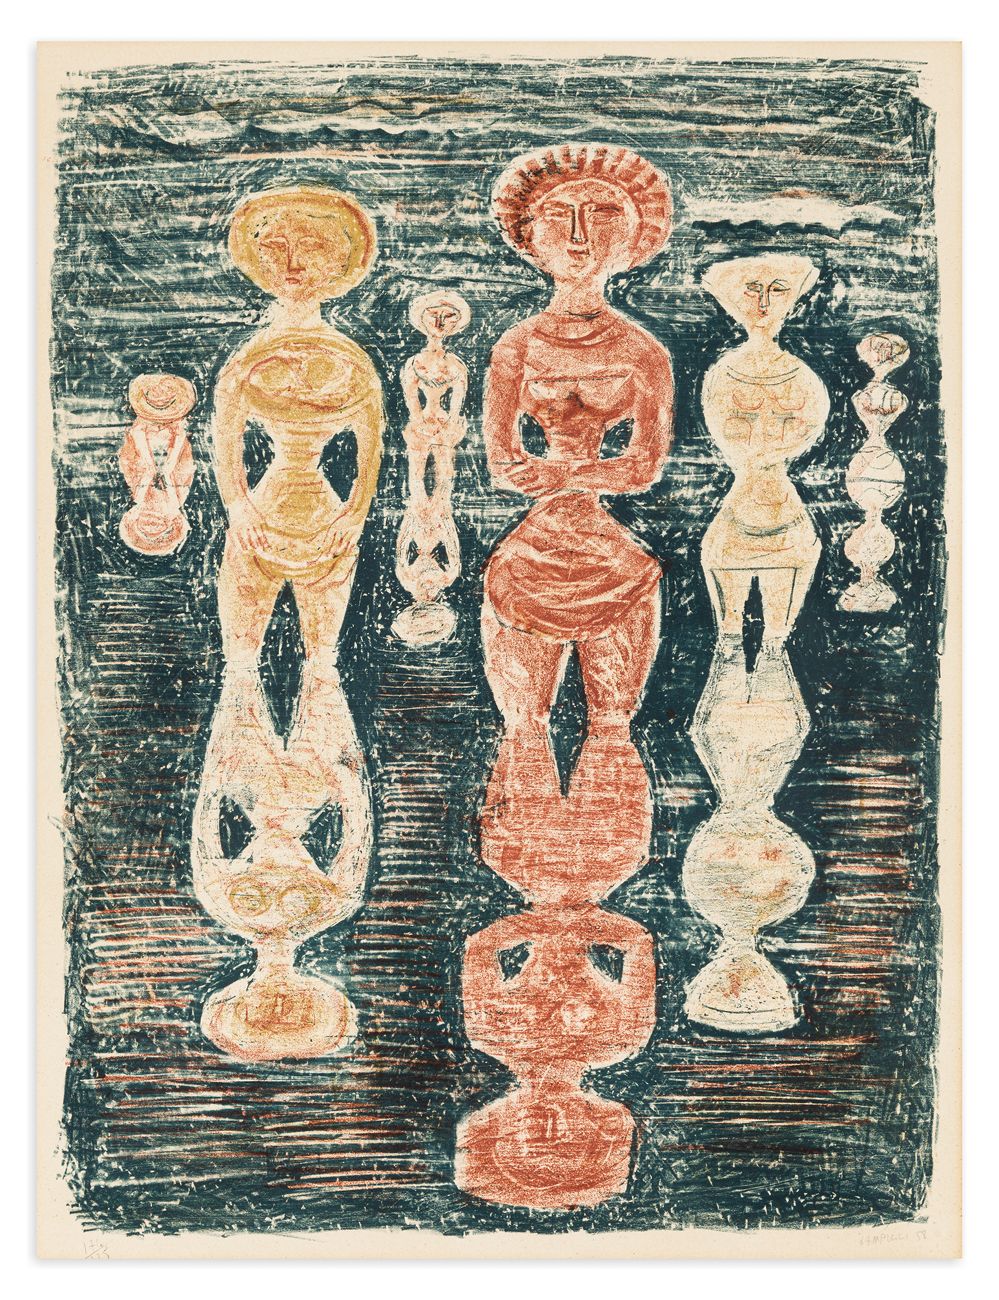 MASSIMO CAMPIGLI (1895-1971) - Nelle risaie (Dans les Rizières), 1958 彩色石版画（蓝色、红&hellip;